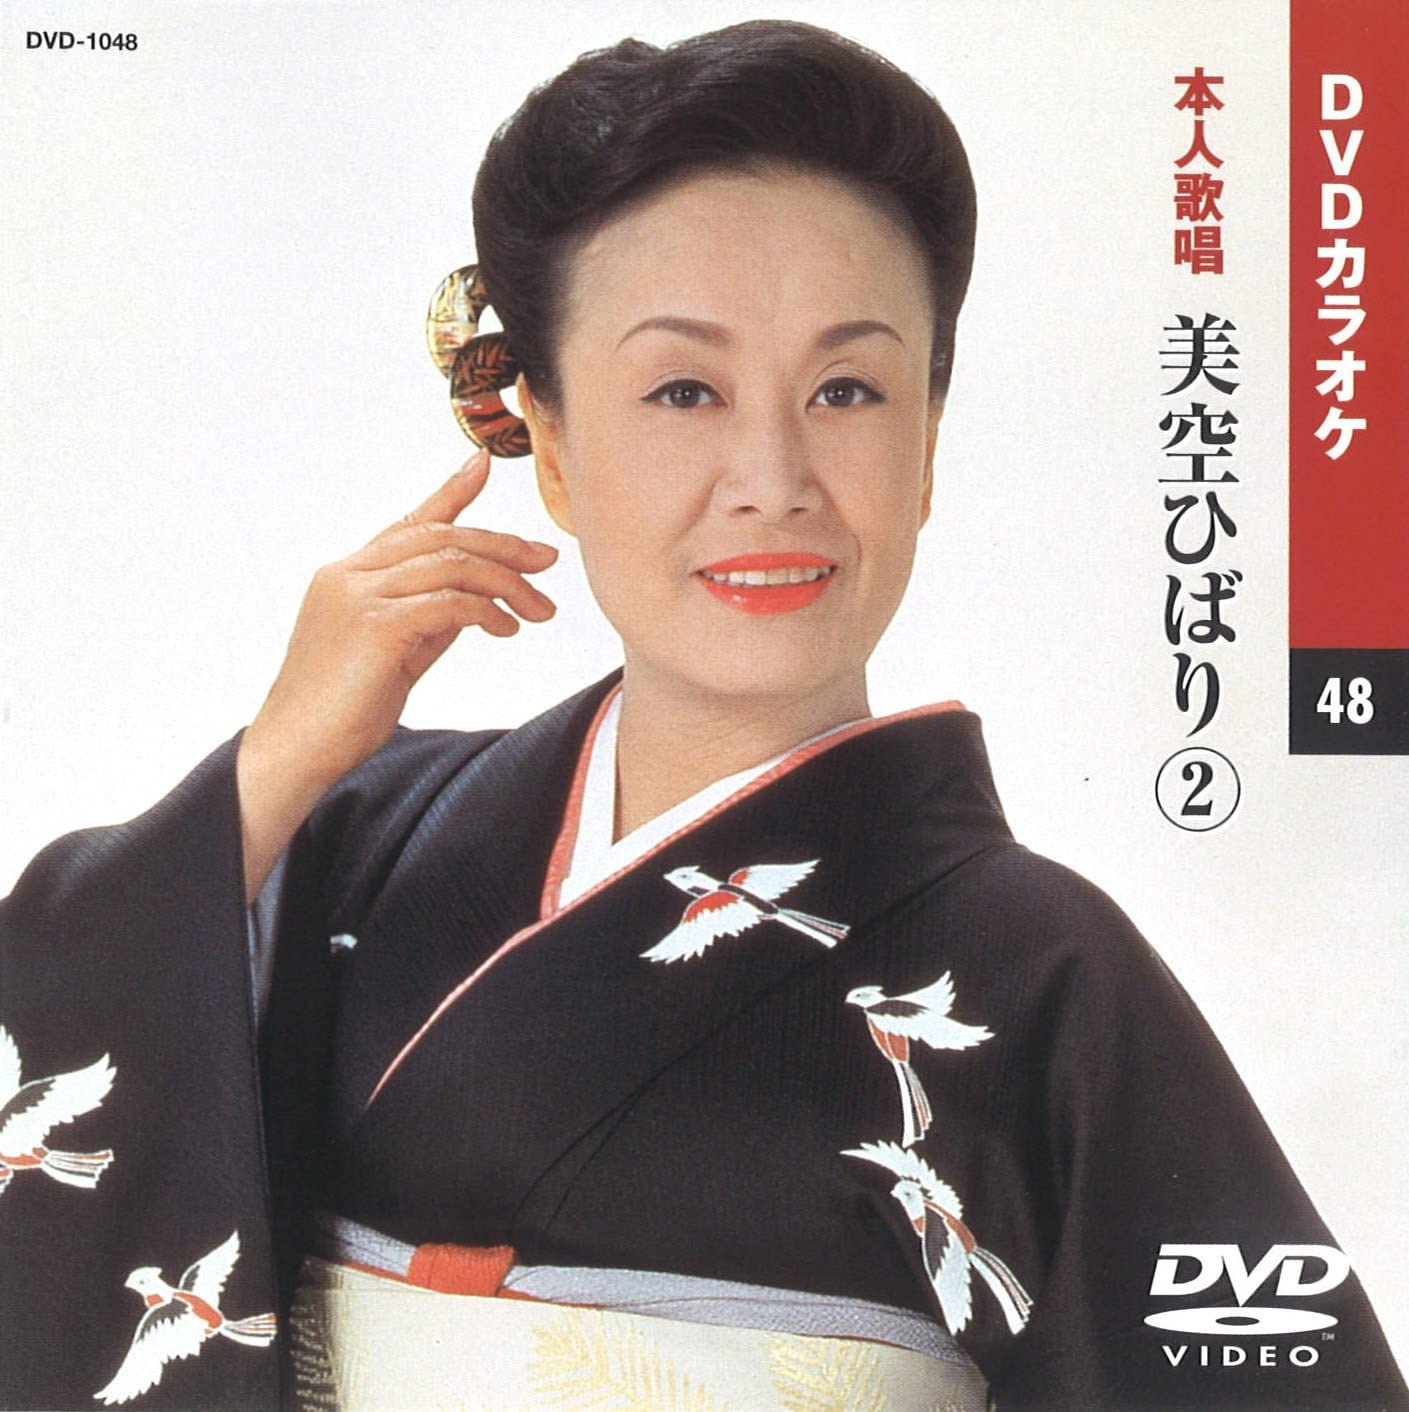  美空ひばり (DVDカラオケ) DVD-1048